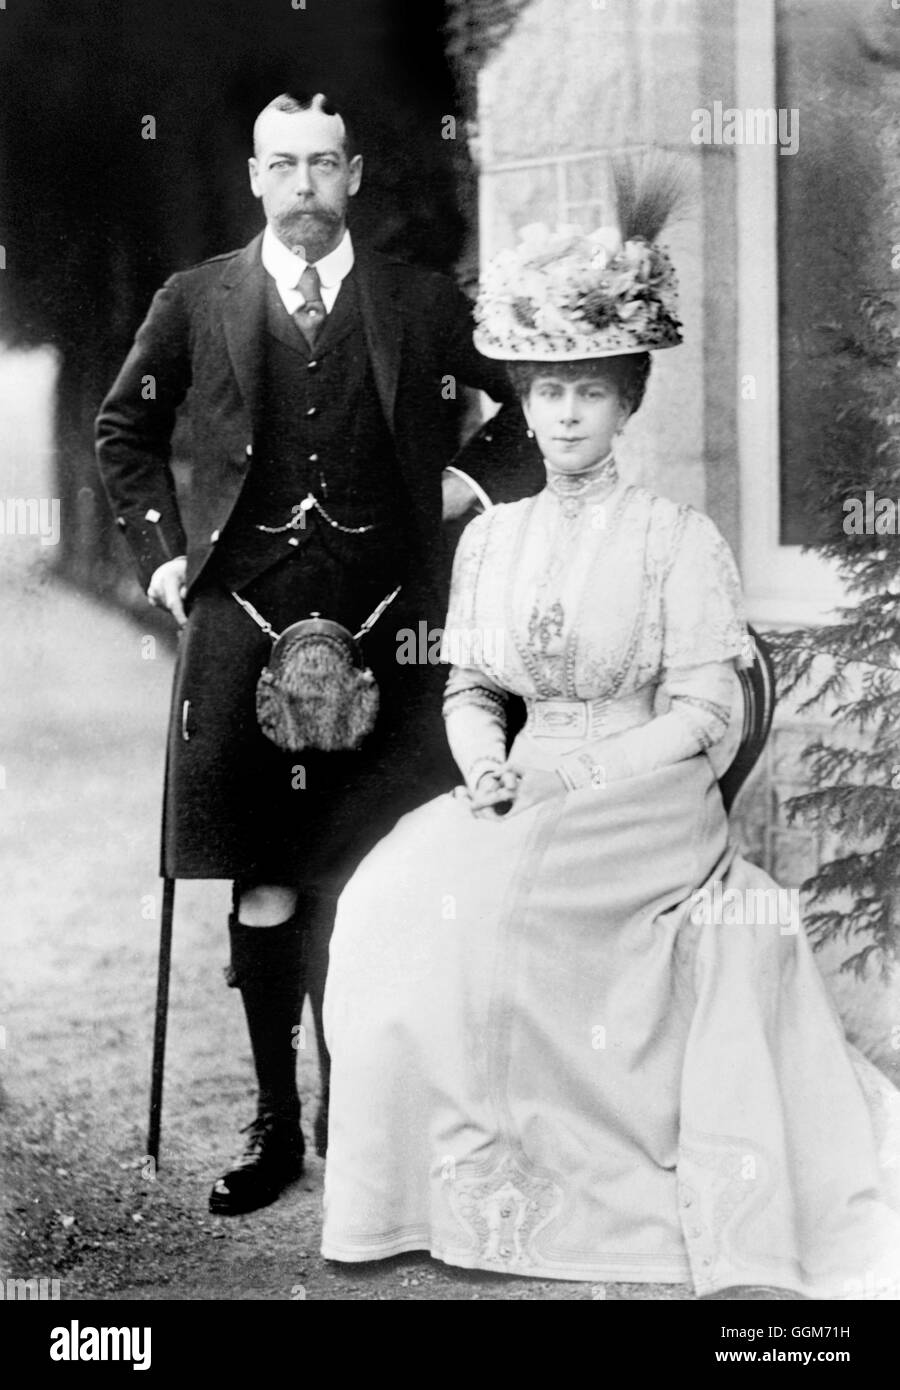 Re Giorgio V (1865-1936) e sua moglie, la regina Maria (Maria di Teck: 1867-1953), prese quando egli era principe di Galles. George V regnò dal 1910 al 1936. Foto da Bains Servizio notizie, c1909. Foto Stock